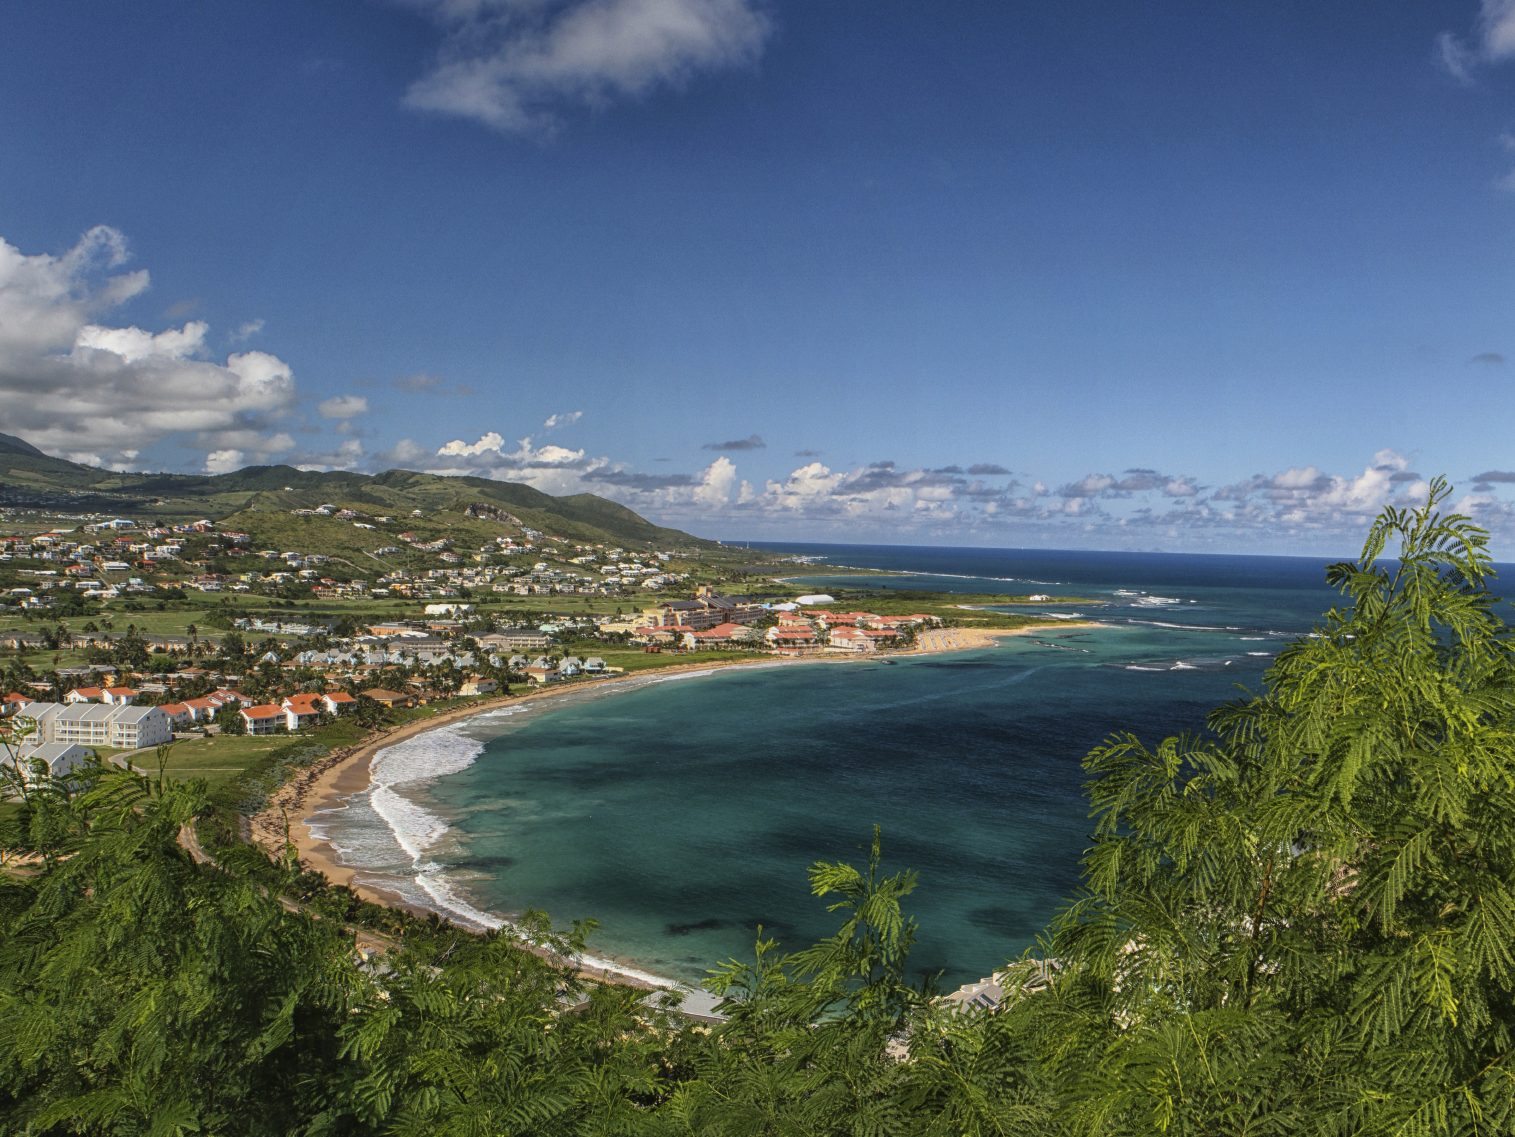 Saint-Christophe (Saint Kitts)